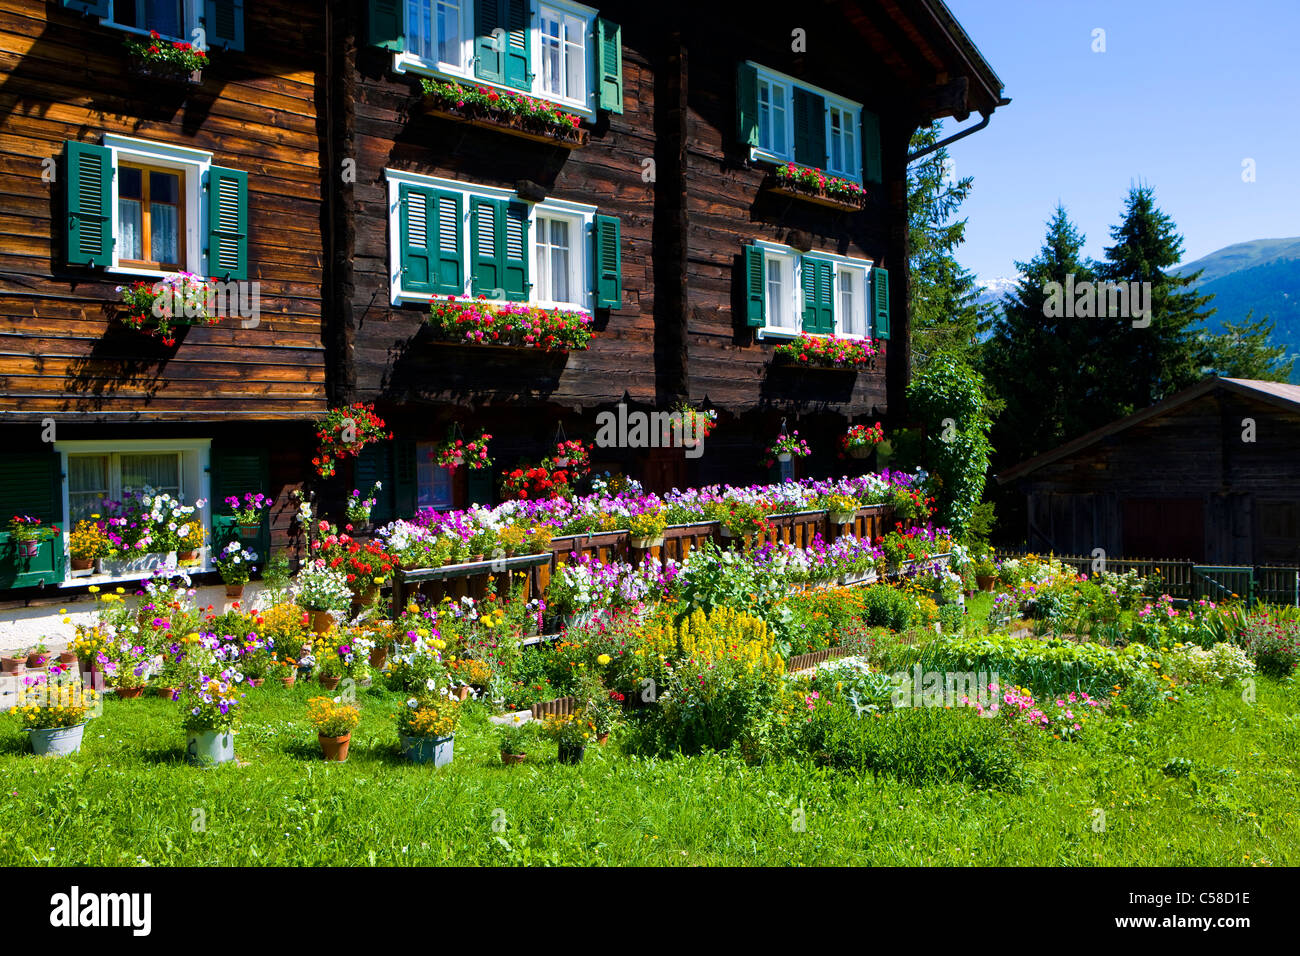 Oberwalliser, Schweiz, Europa, Kanton Wallis, Haus, Haus, Holzhaus, Garten,  Blumen, Haus Schmuck Stockfotografie - Alamy